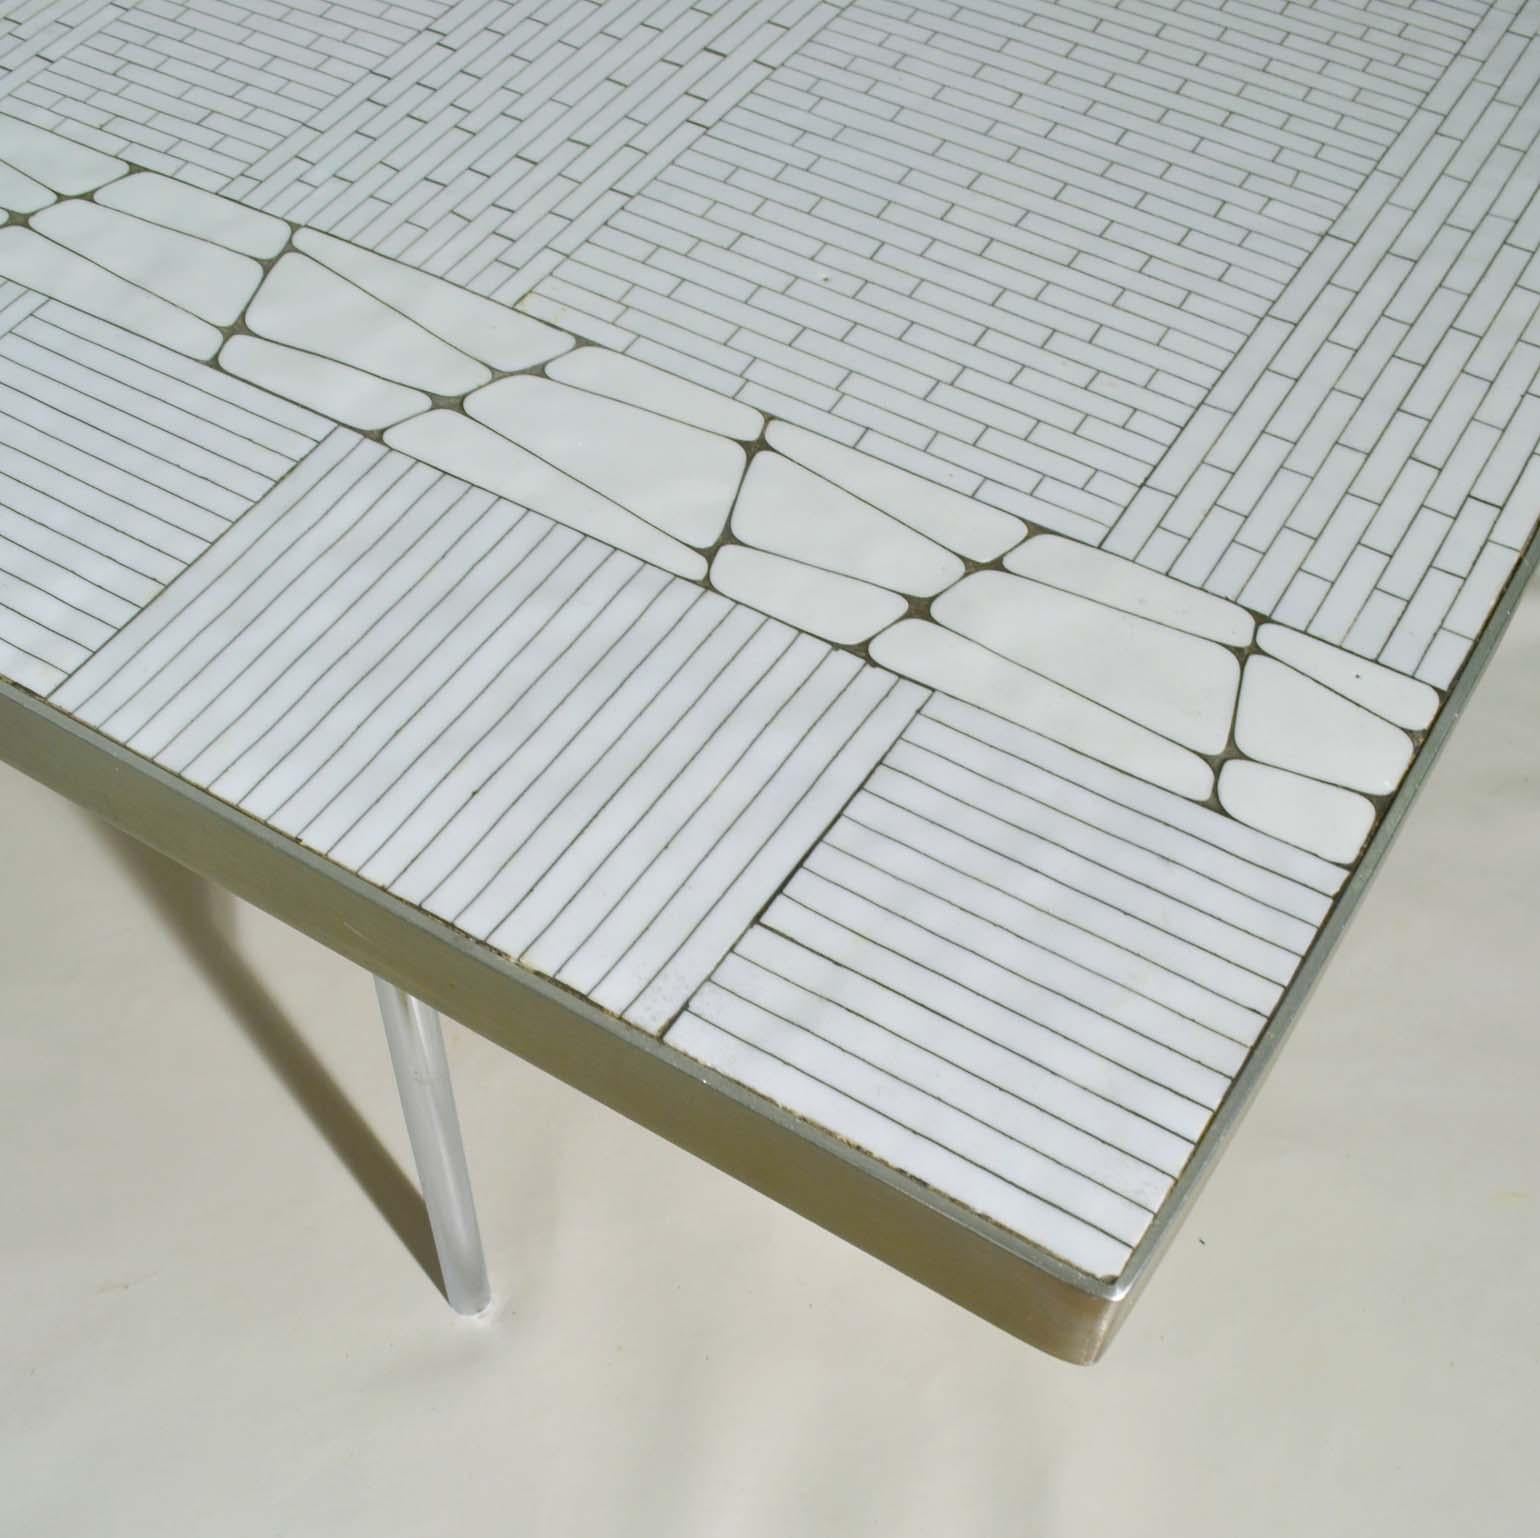 La table basse rectangulaire en mosaïque blanche est composée de centaines de carrés et de rectangles en verre pour former un motif abstrait, populaire dans les années 1950-1970. Les bords de la table sont enveloppés d'aluminium poli. La table